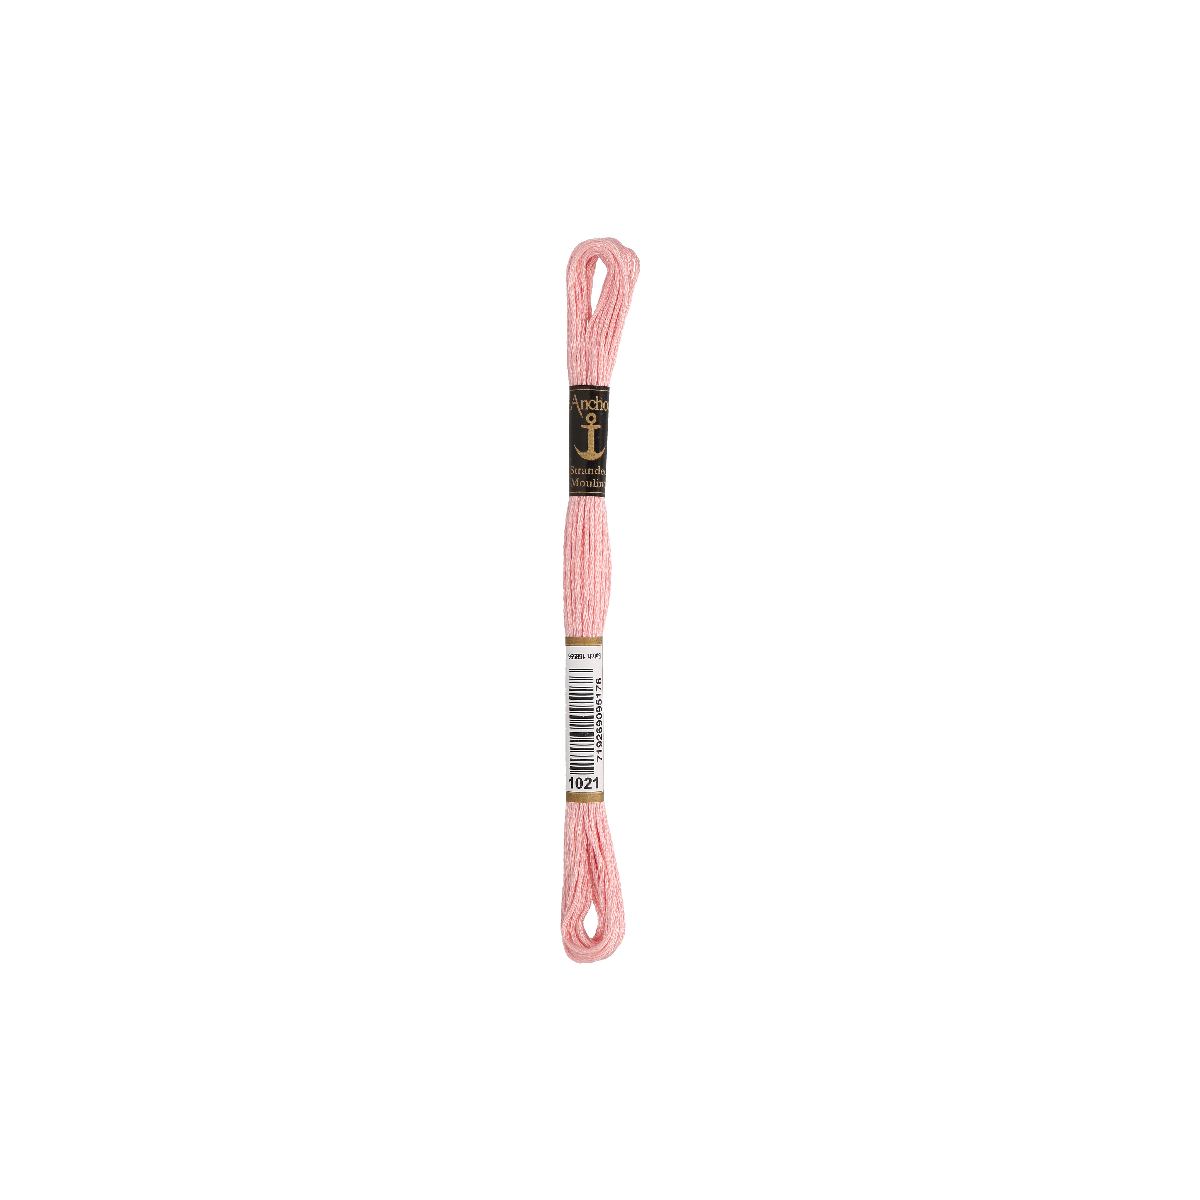 Anchor мулине 8m, розовый средний, Хлопок,  цвет 1021,...